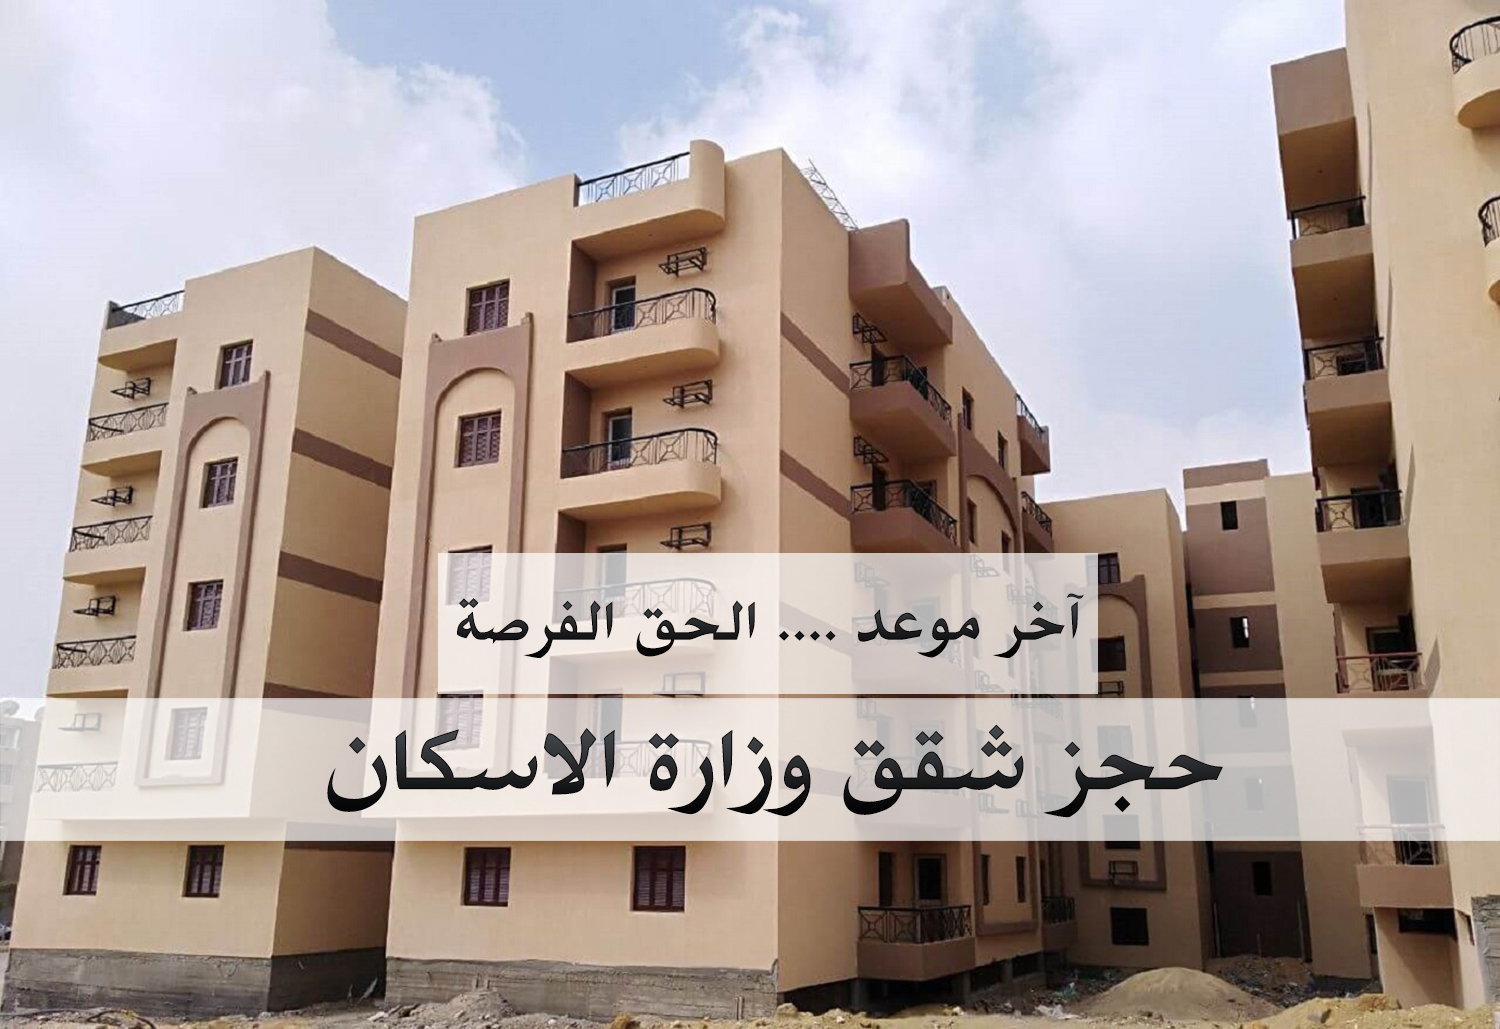 وزارة الاسكان آخر موعد لحجز شقق مشروع دار مصر بـ8 مدن اليوم الخميس تعرف على خطوات وطريقة التقديم